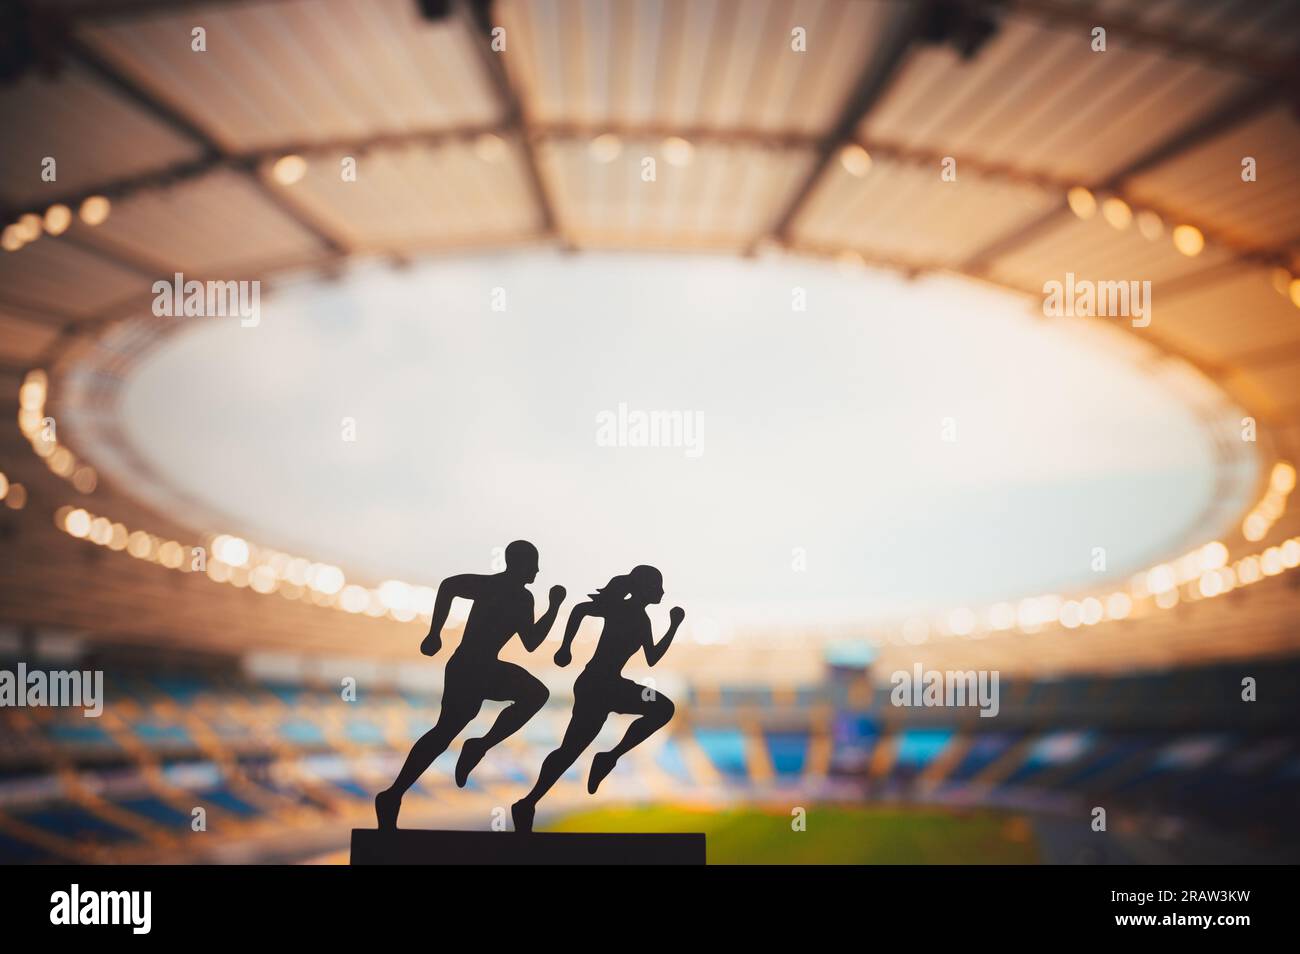 Gemeinsam nach Größe streben: Die Silhouetten männlicher und weiblicher Läufer setzen Grenzen und inspirieren sich gegenseitig in einem modernen Sportstadion. Stockfoto